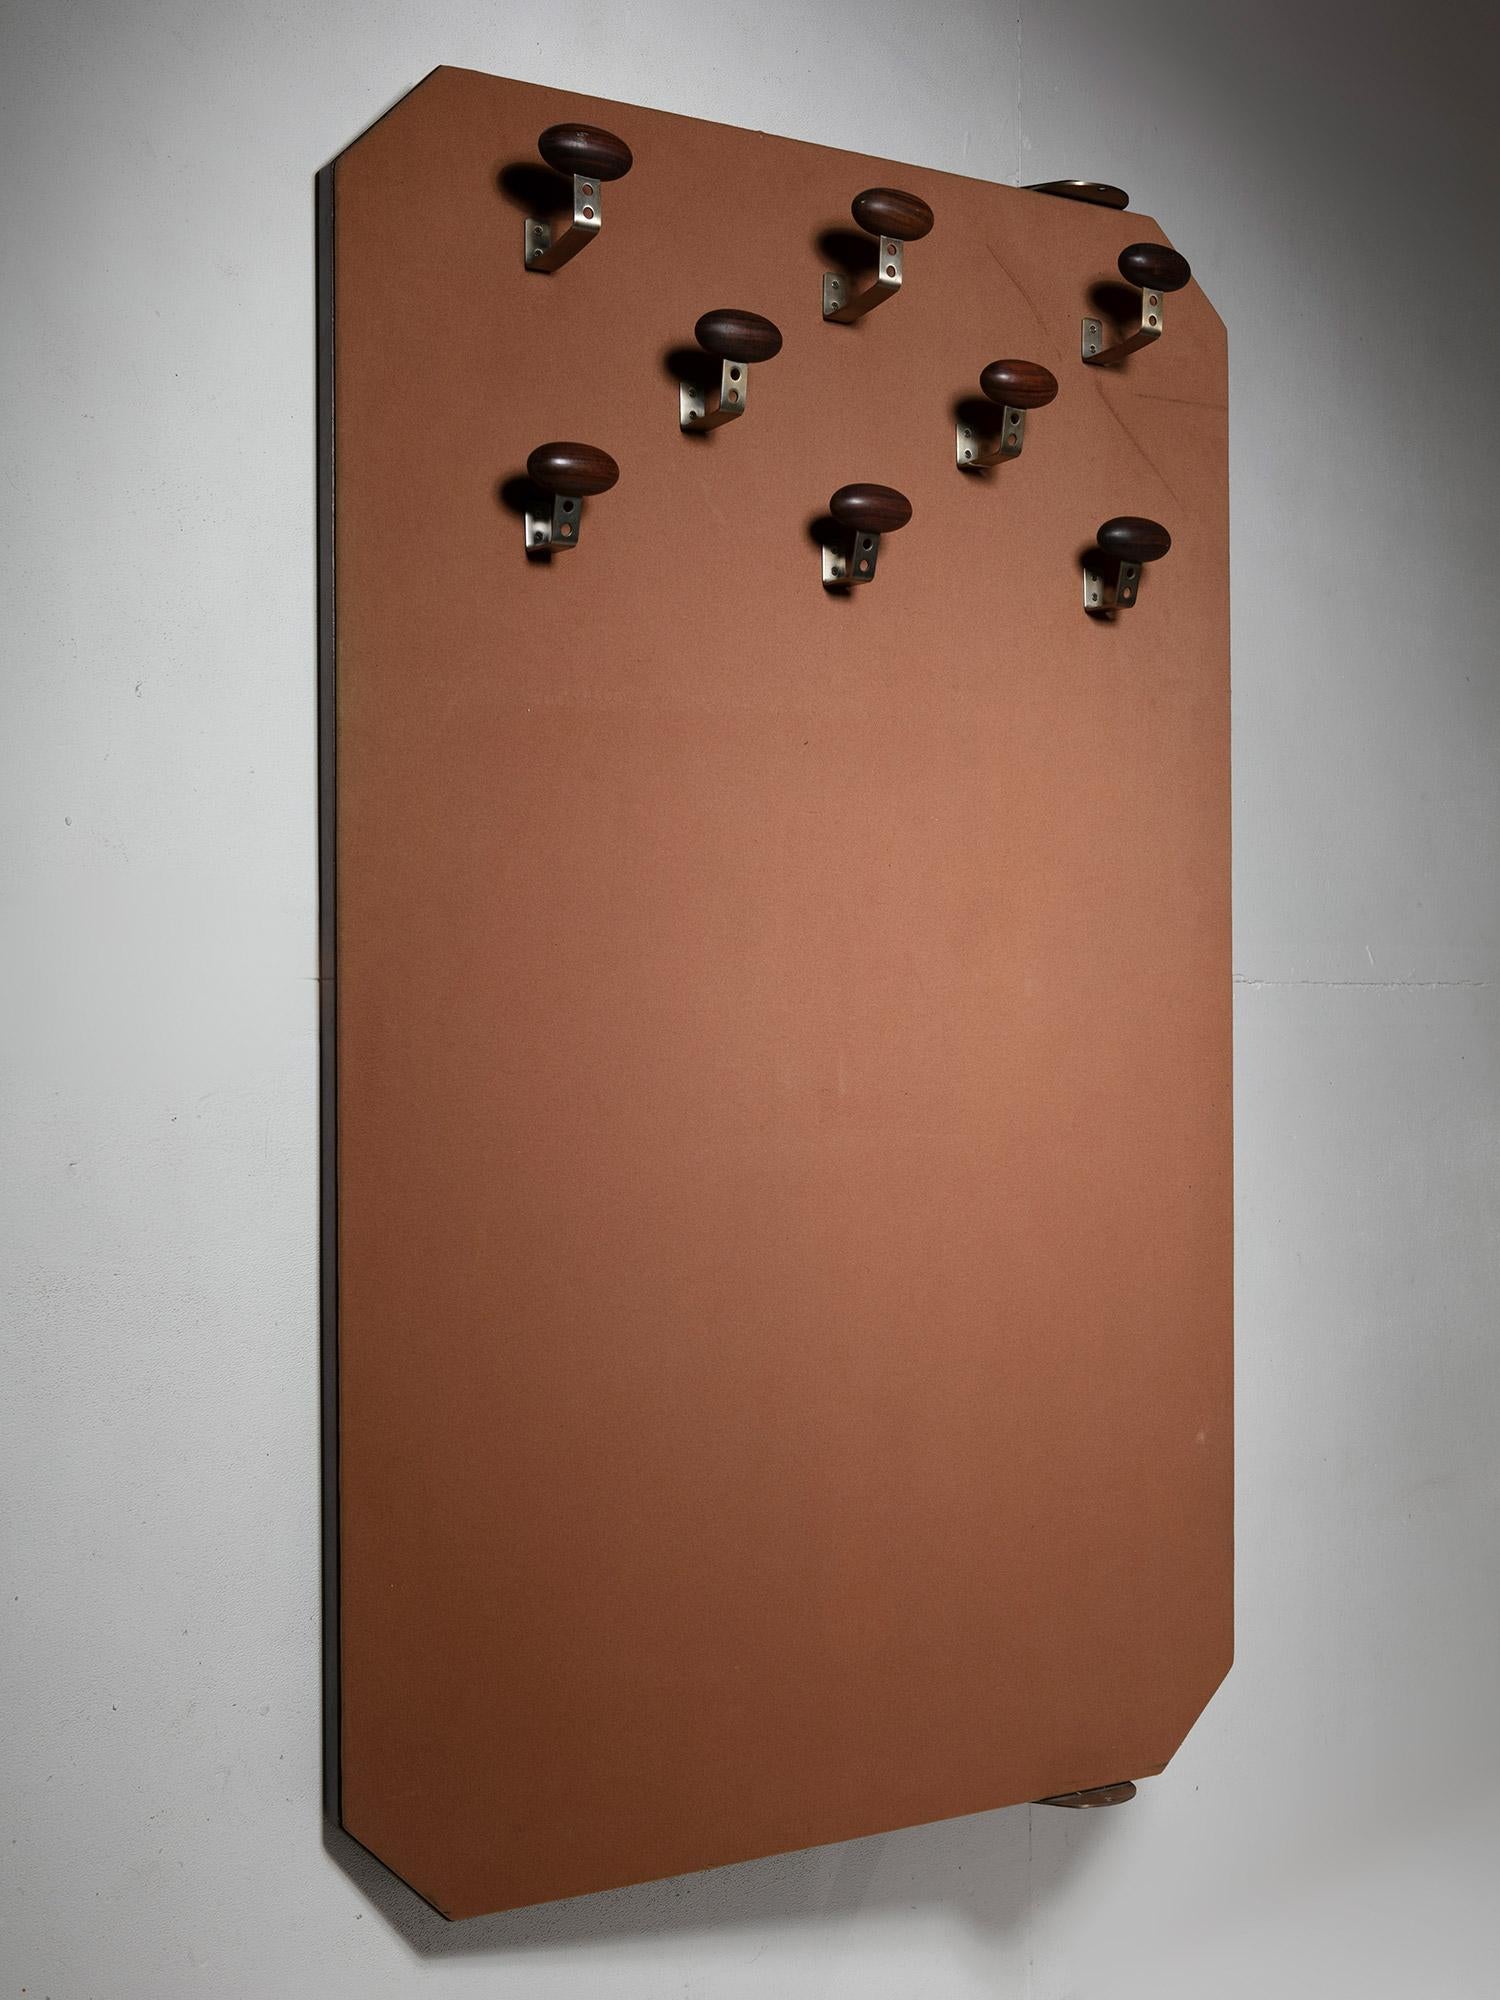 Italian Revolving Bi-Sided Wall Coat Rack by Osvaldo Borsani for Tecno, Italy, 1960s For Sale